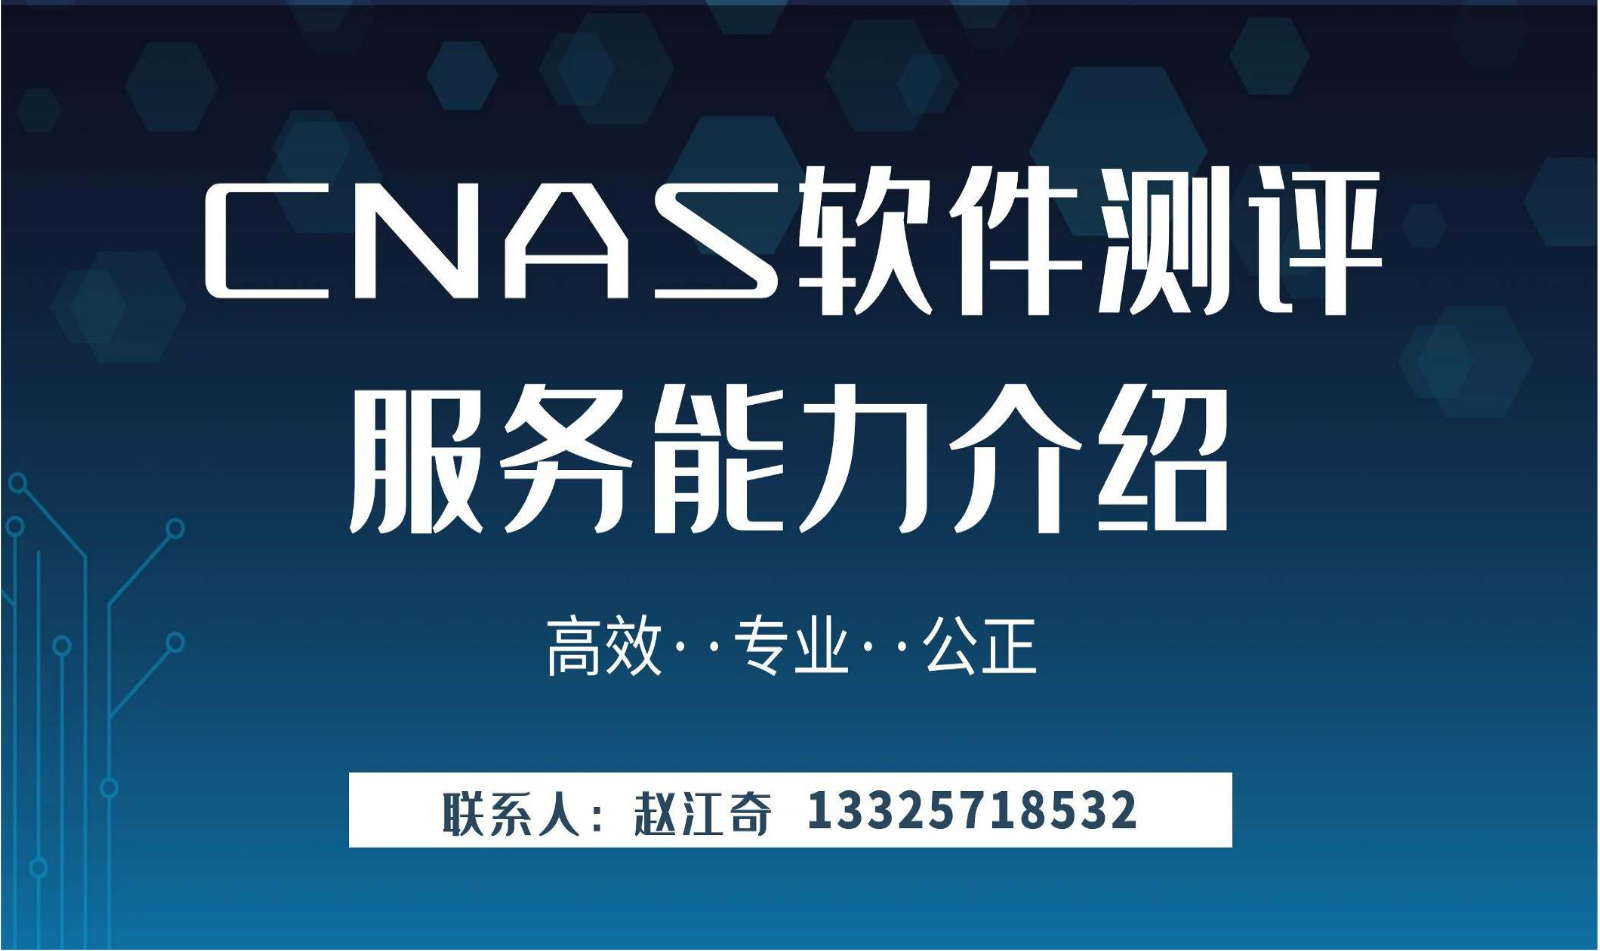 华信CNAS软件测评服务能力介绍